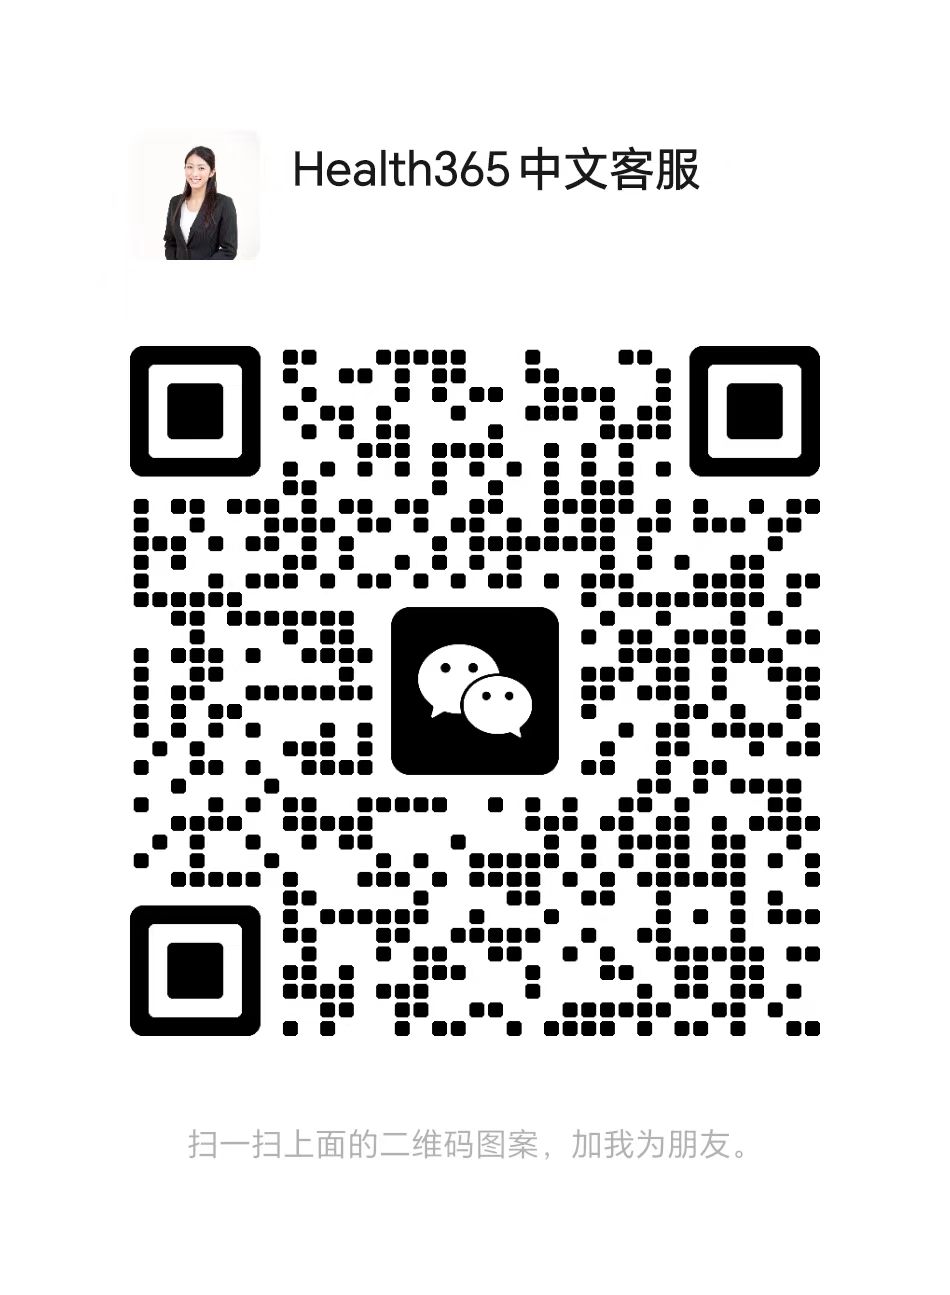 WeChat 联络我们